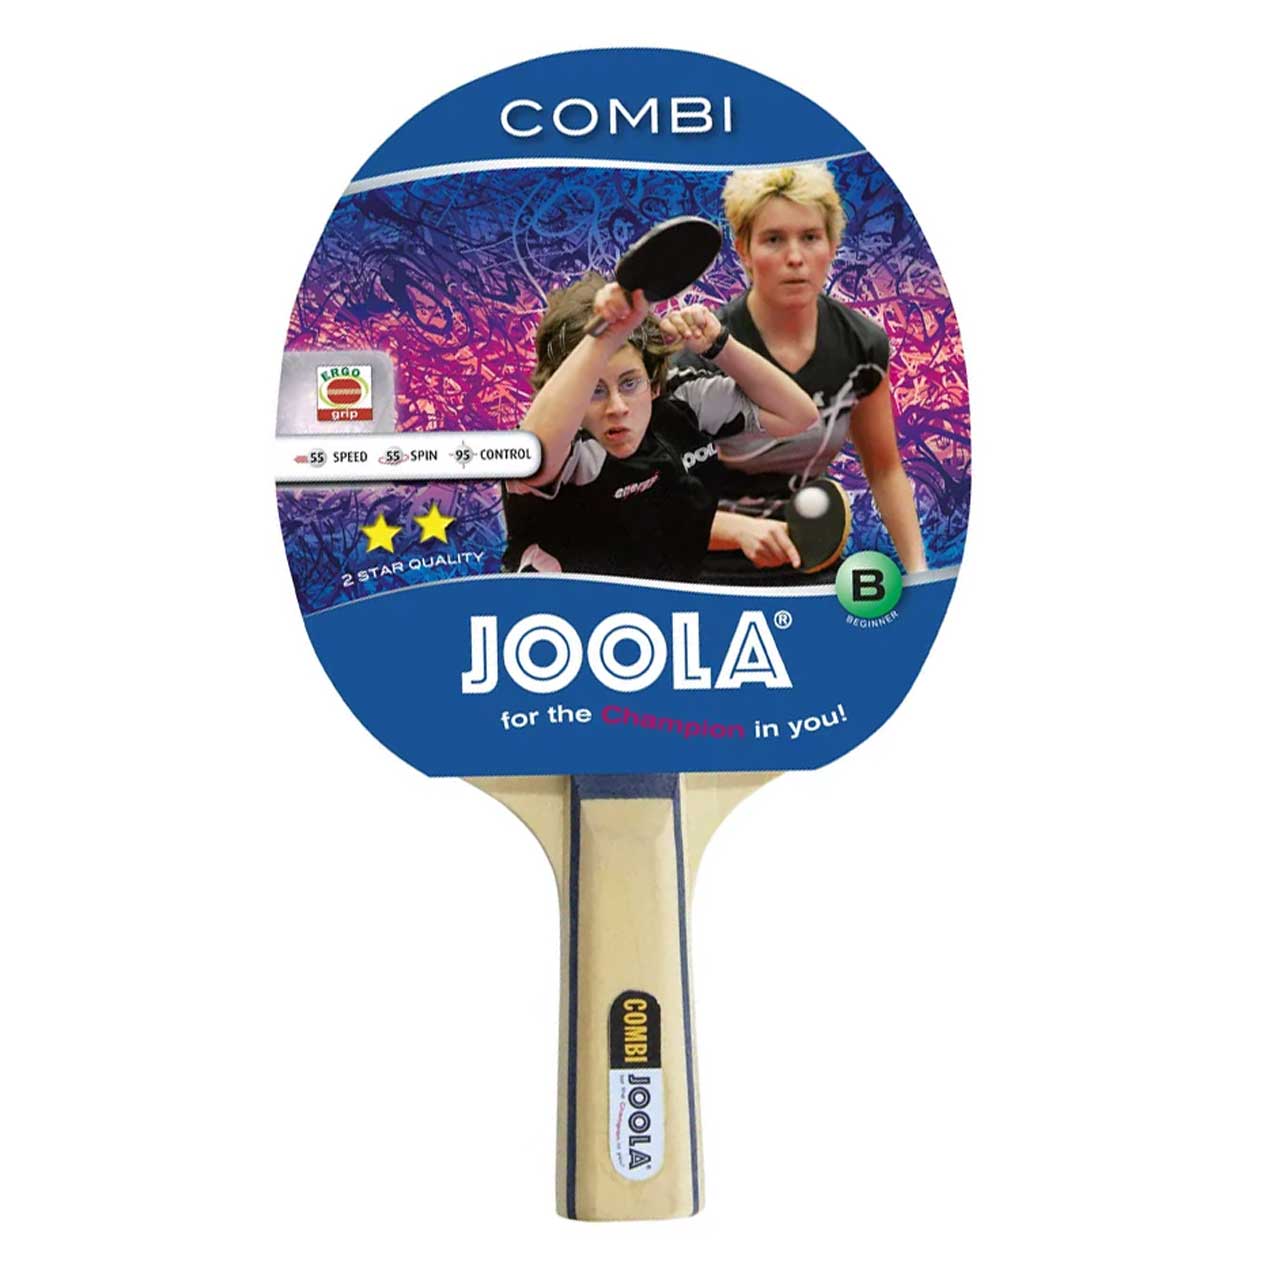 Tischtennisschläger Joola Combi